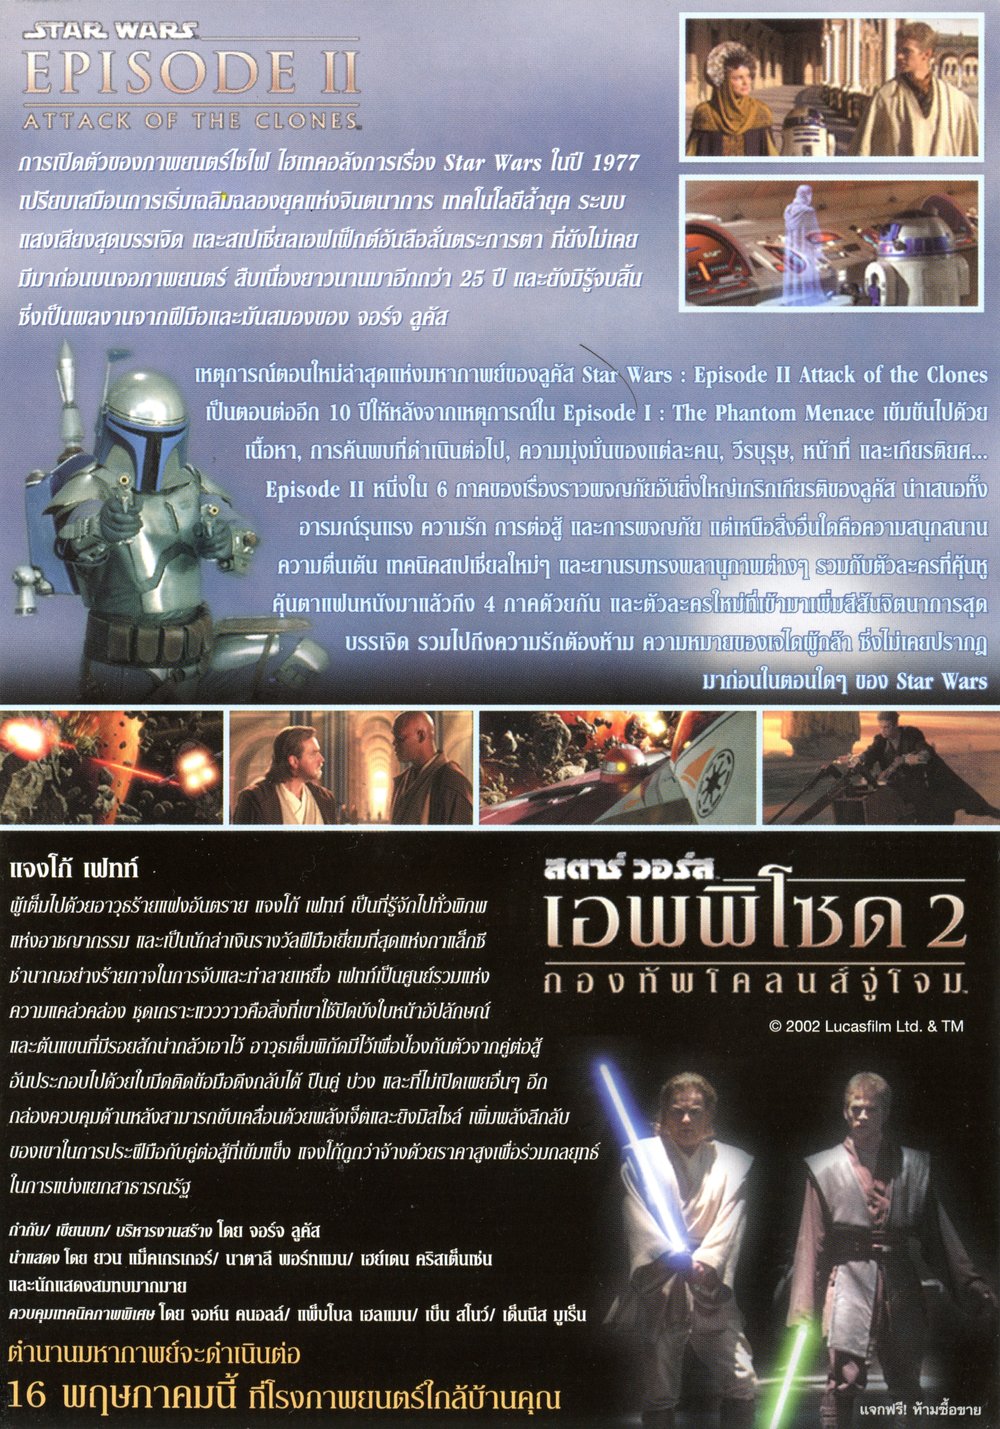 AOTC Thailand Handbill - Jango Fett 2.jpg